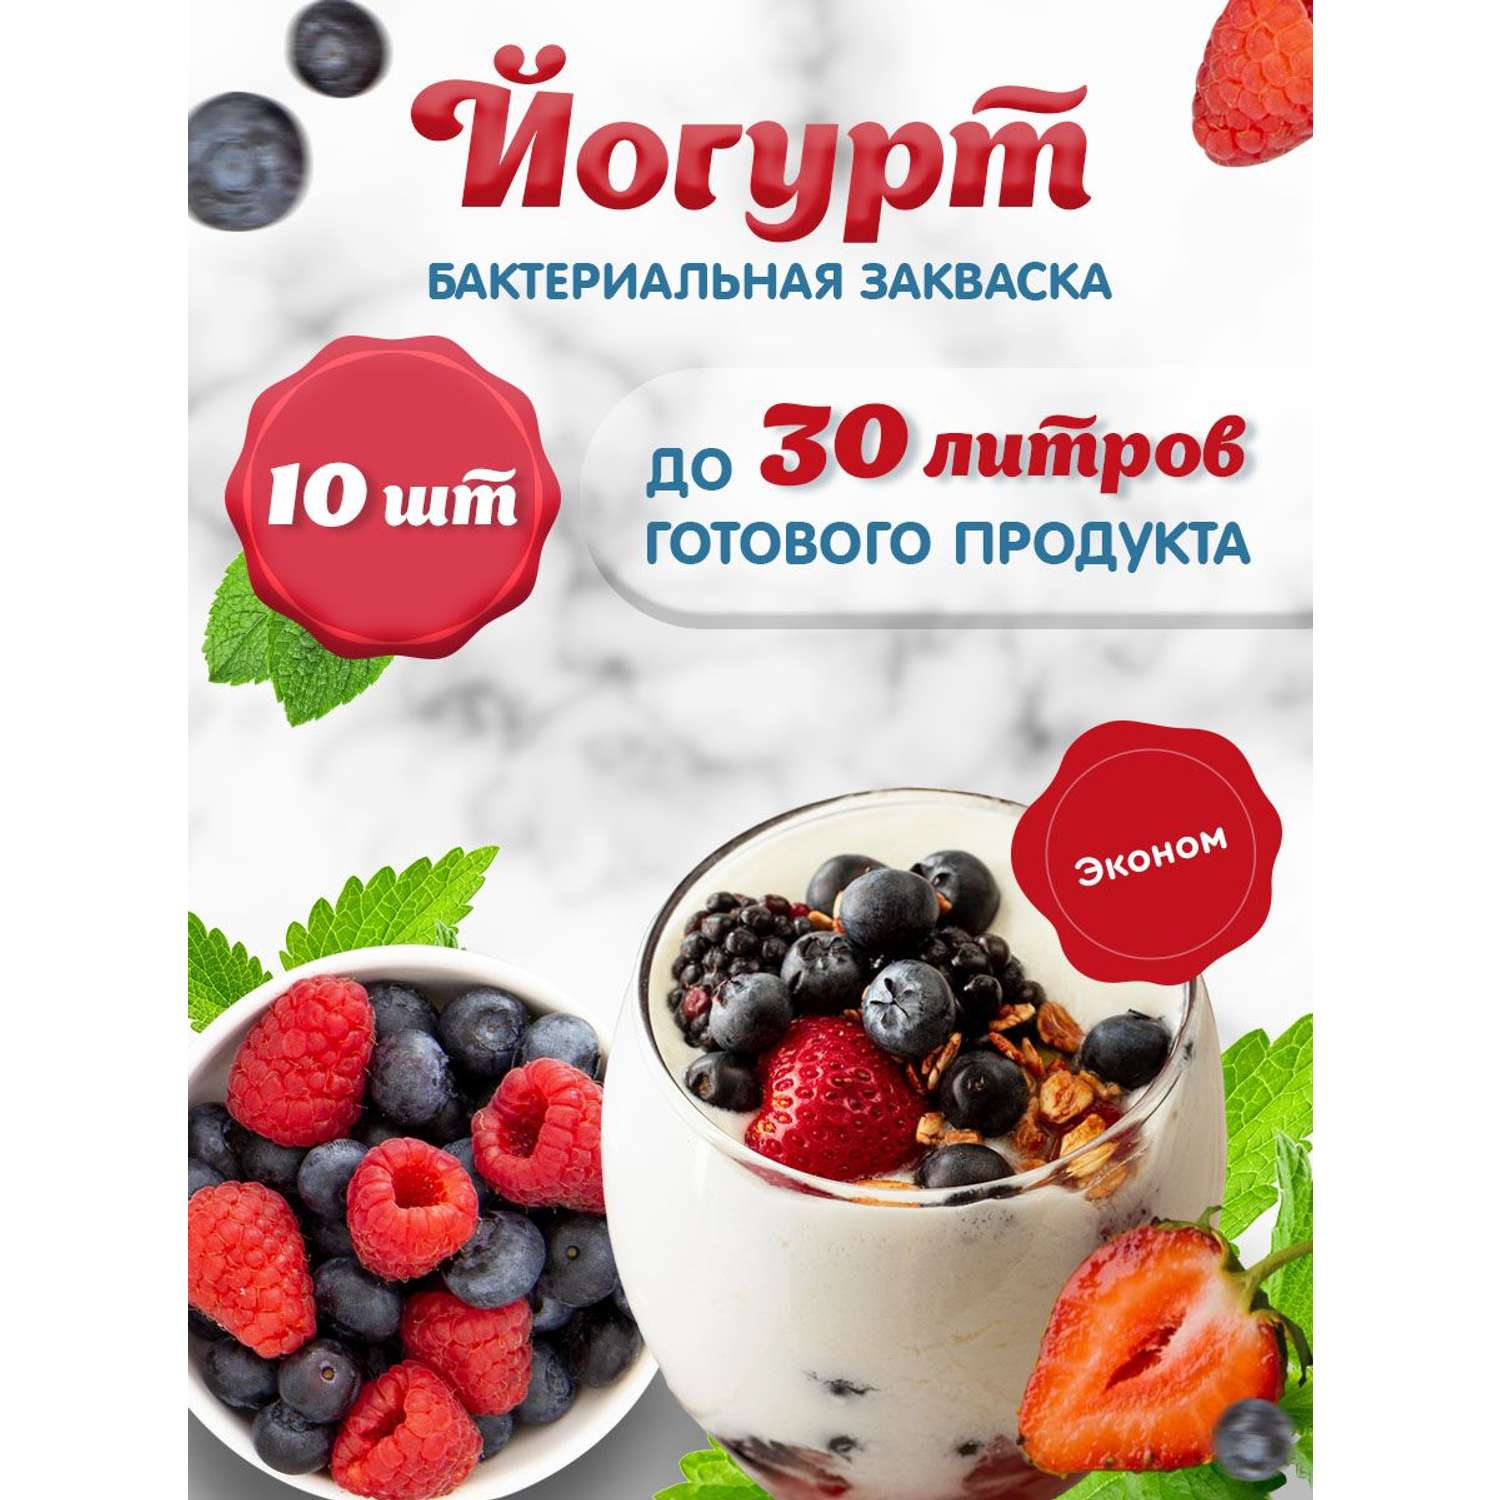 Закваска Свой йогурт Эконом 10 шт - фото 2